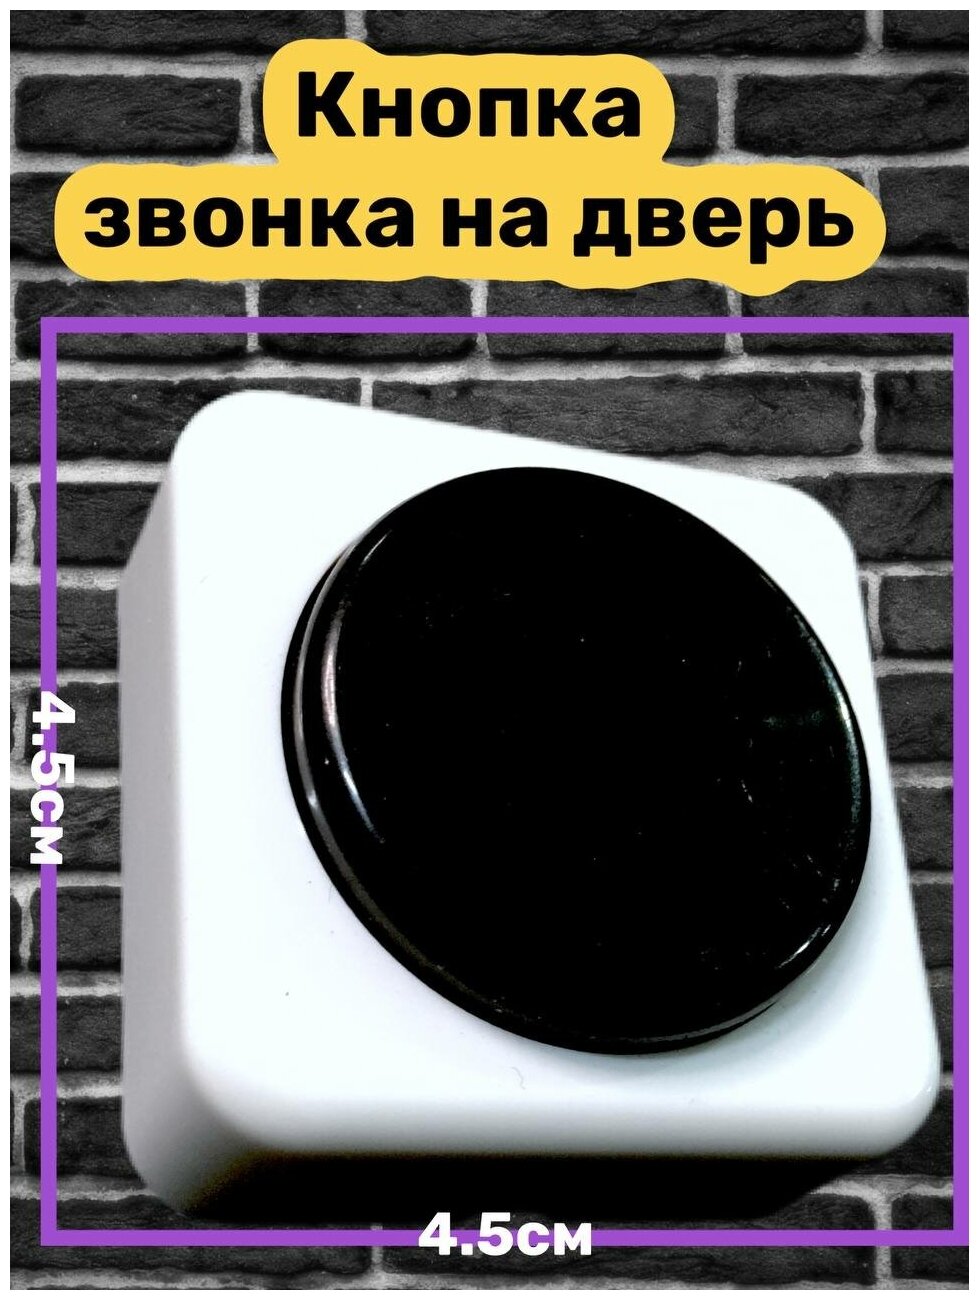 Кнопка народная / Кнопка звонка / Кнопка на дверь / Звонок / кнопка дверного проводного звонка